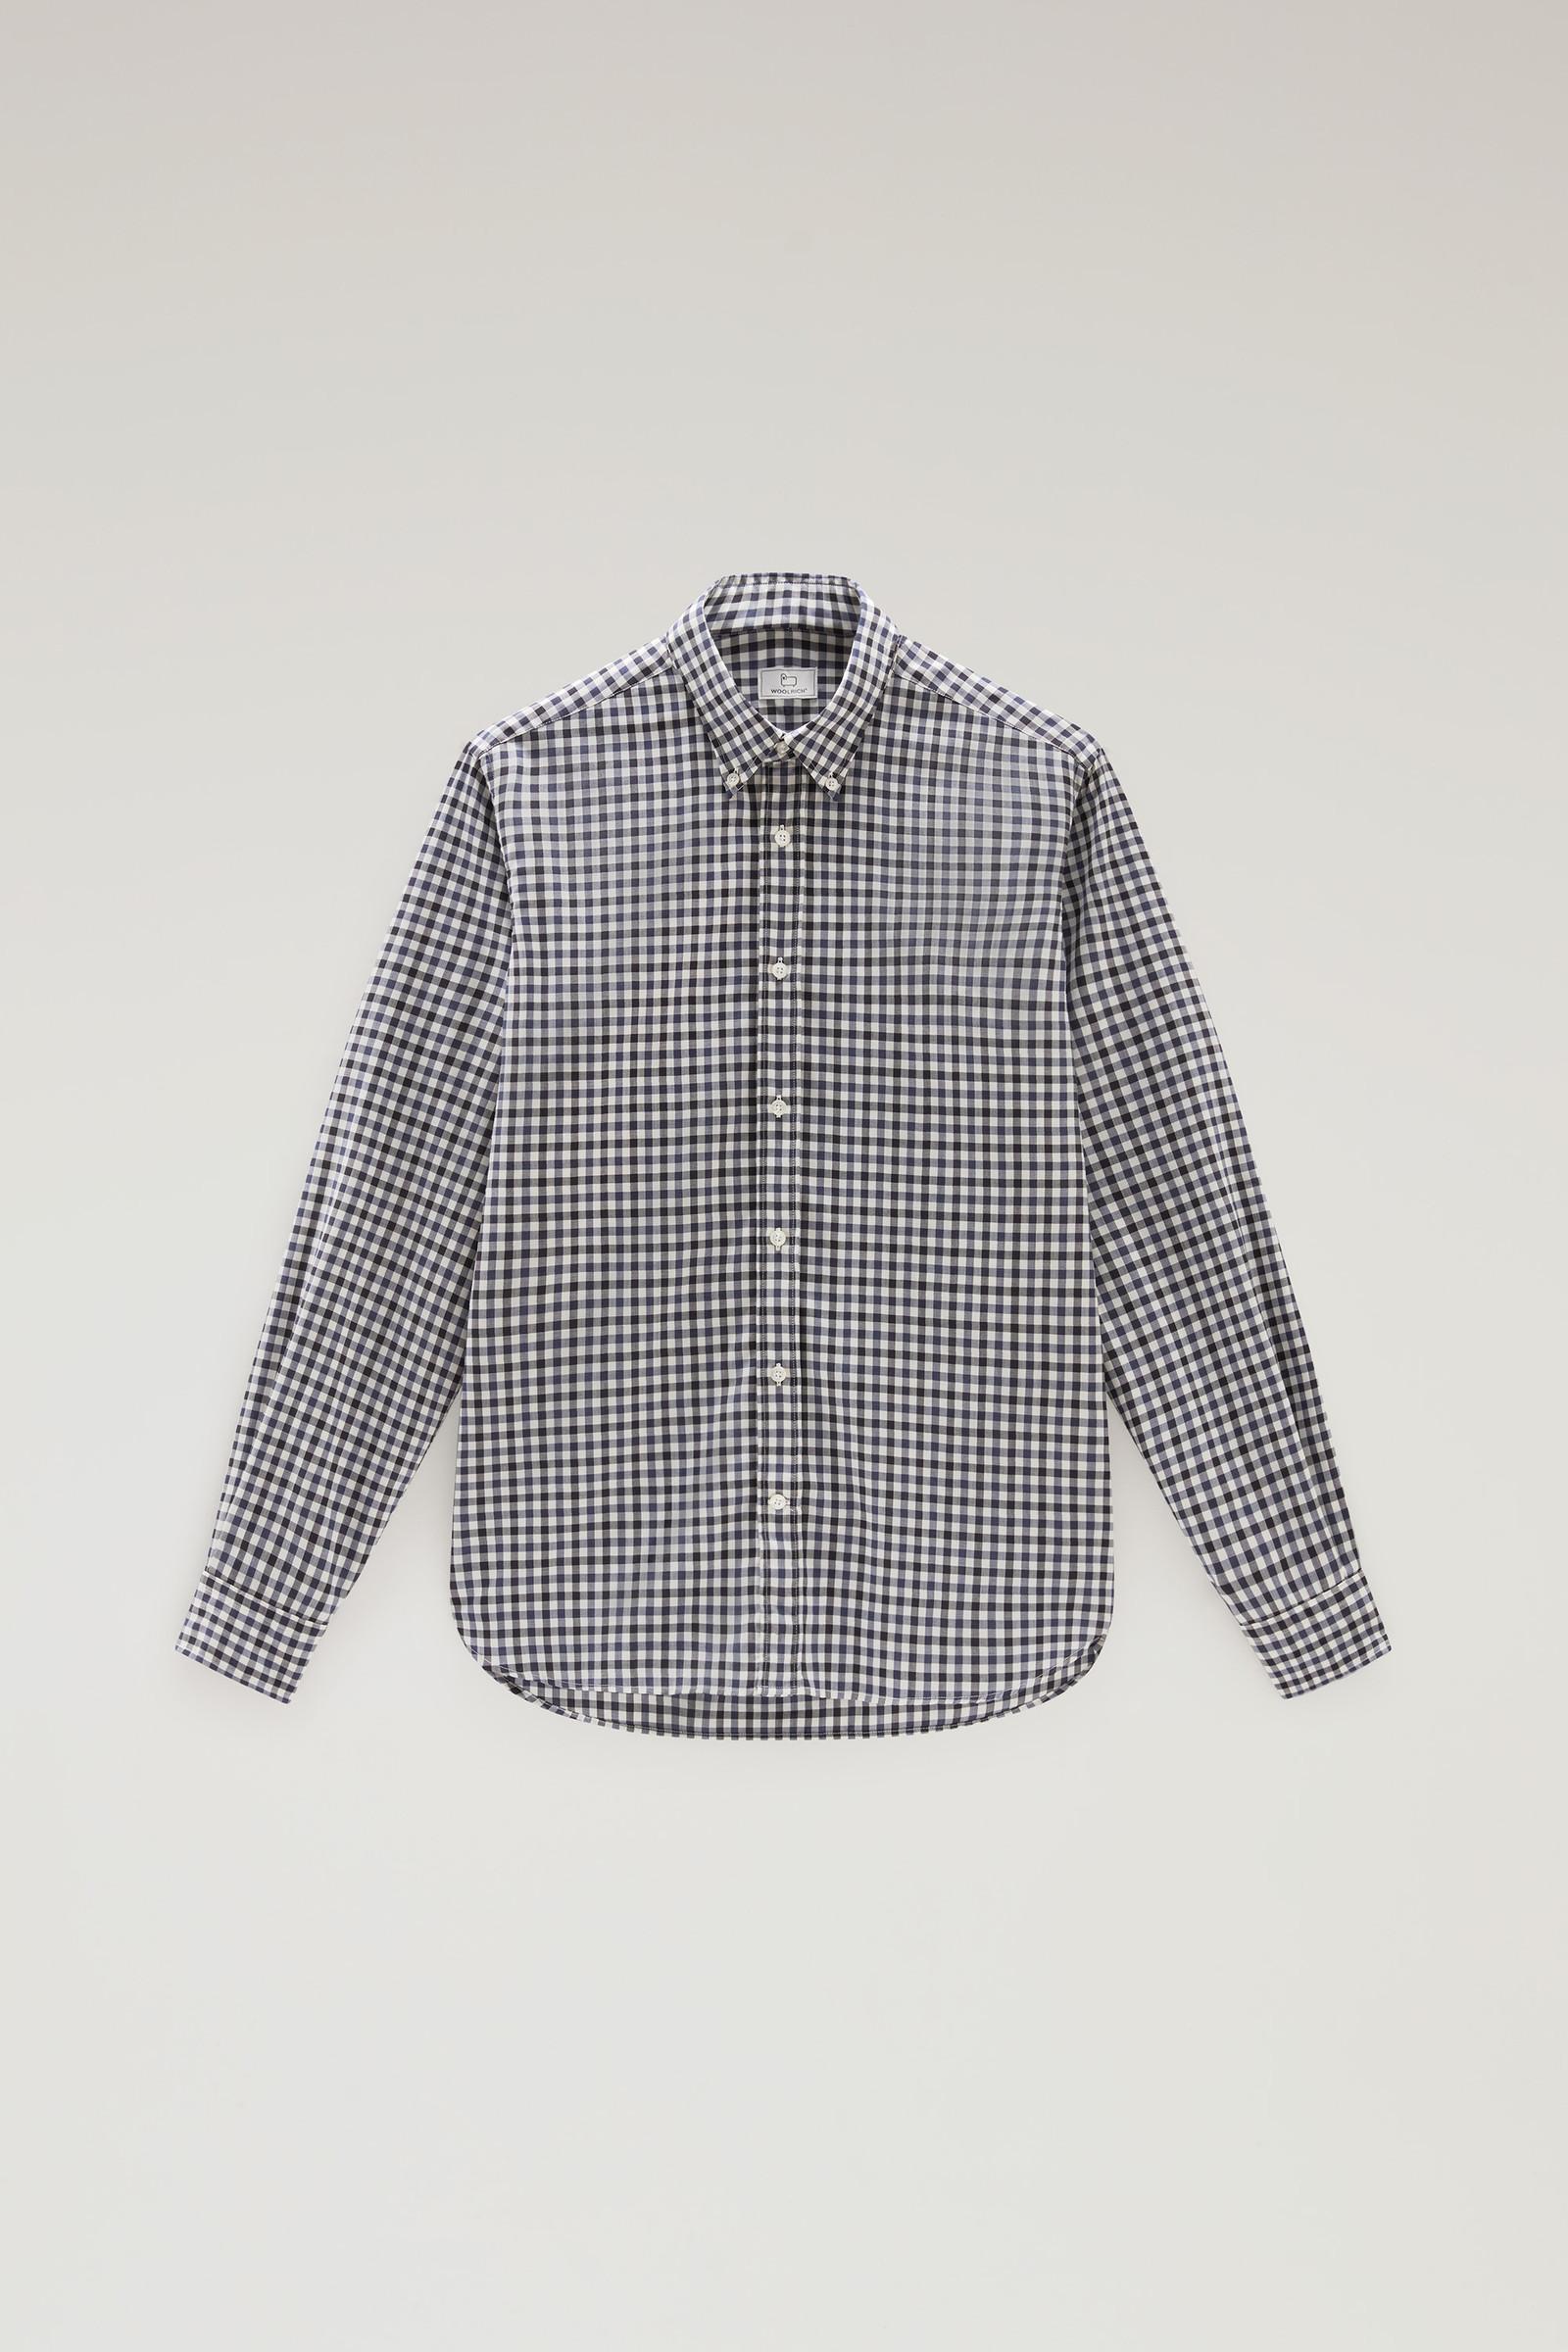 Men's Check Shirt in Cool Virgin Merino Wool Blue | Woolrich USA